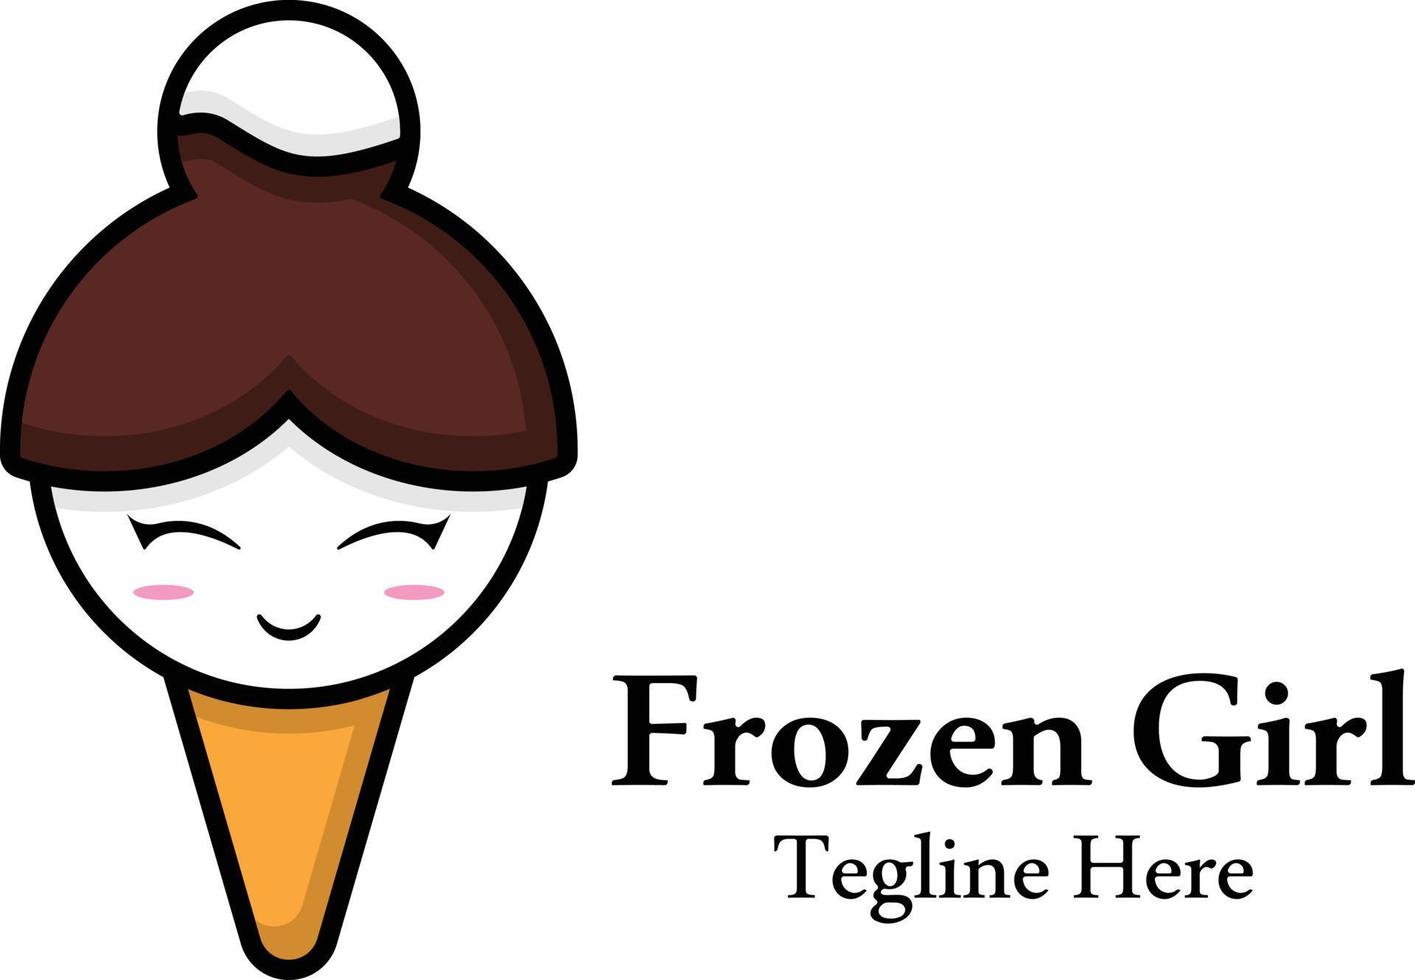 Delicious frozen ice cream girl logo design template, ice cream and girl head vector